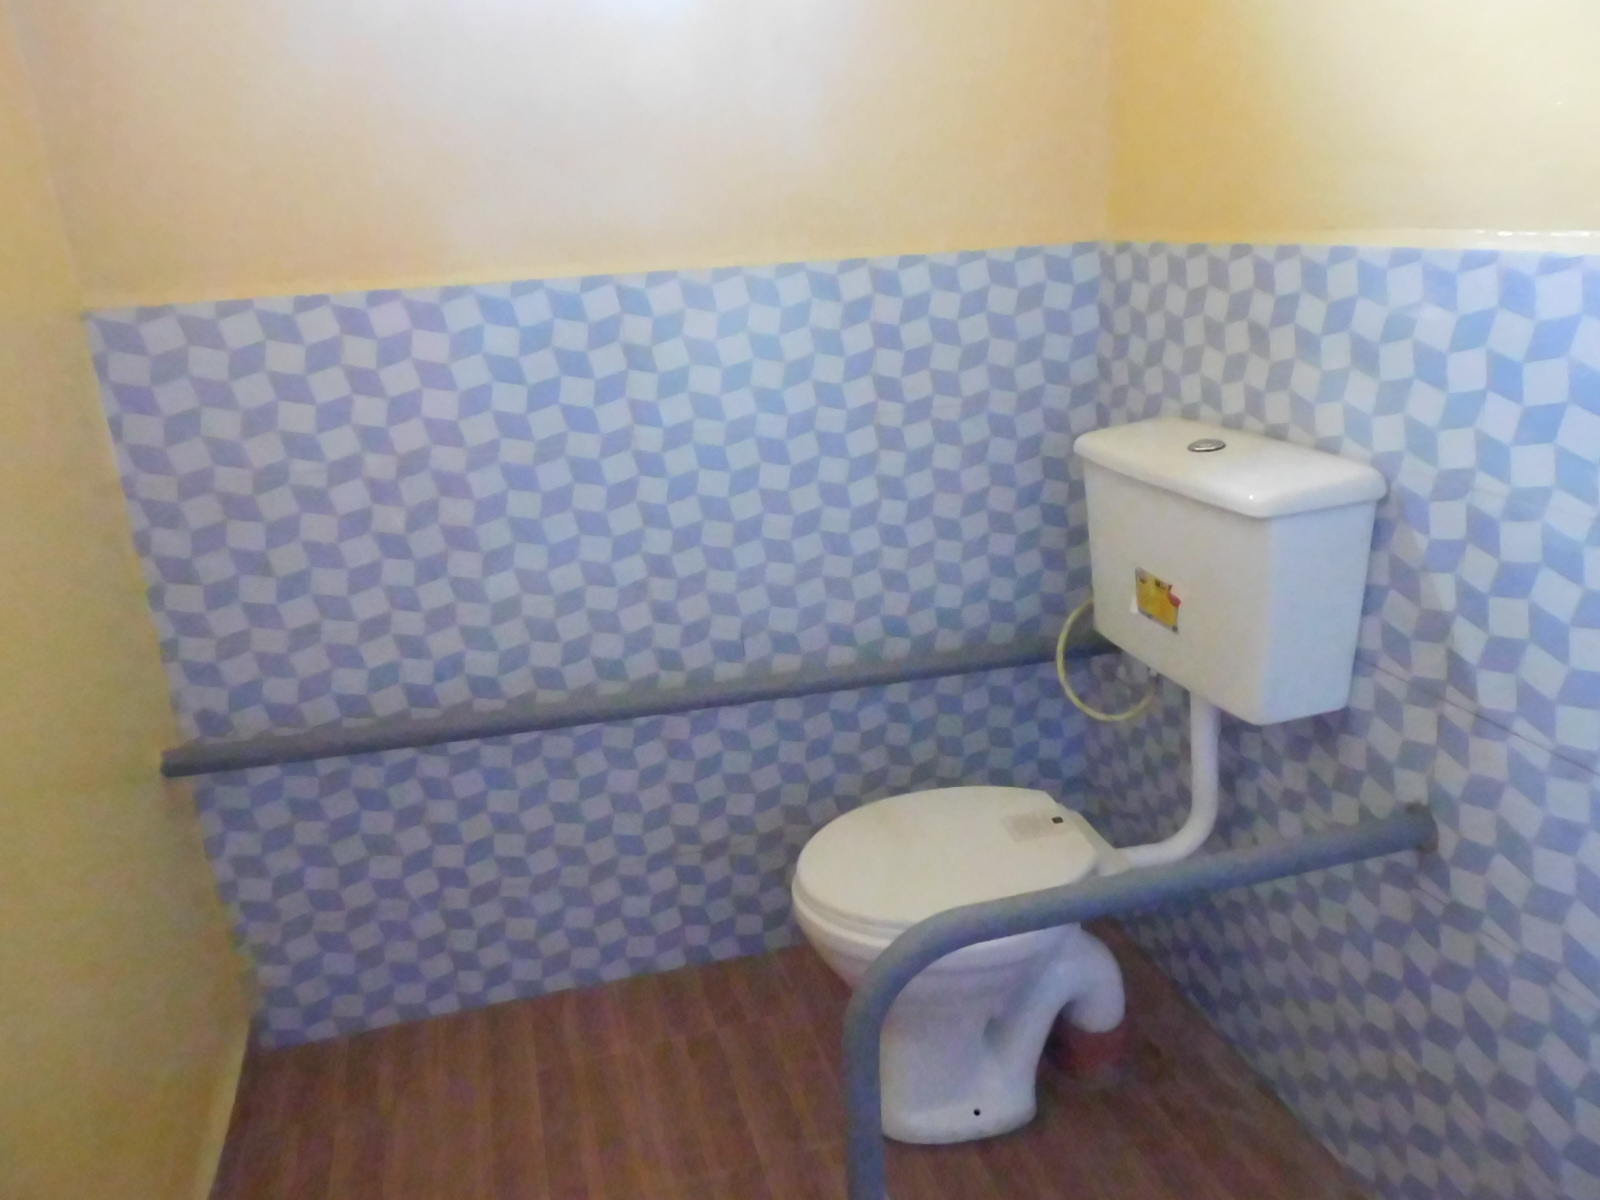 Ein Toilettensitz mit Spülkasten im Halbprofil fotografiert, rechts und links Griffe